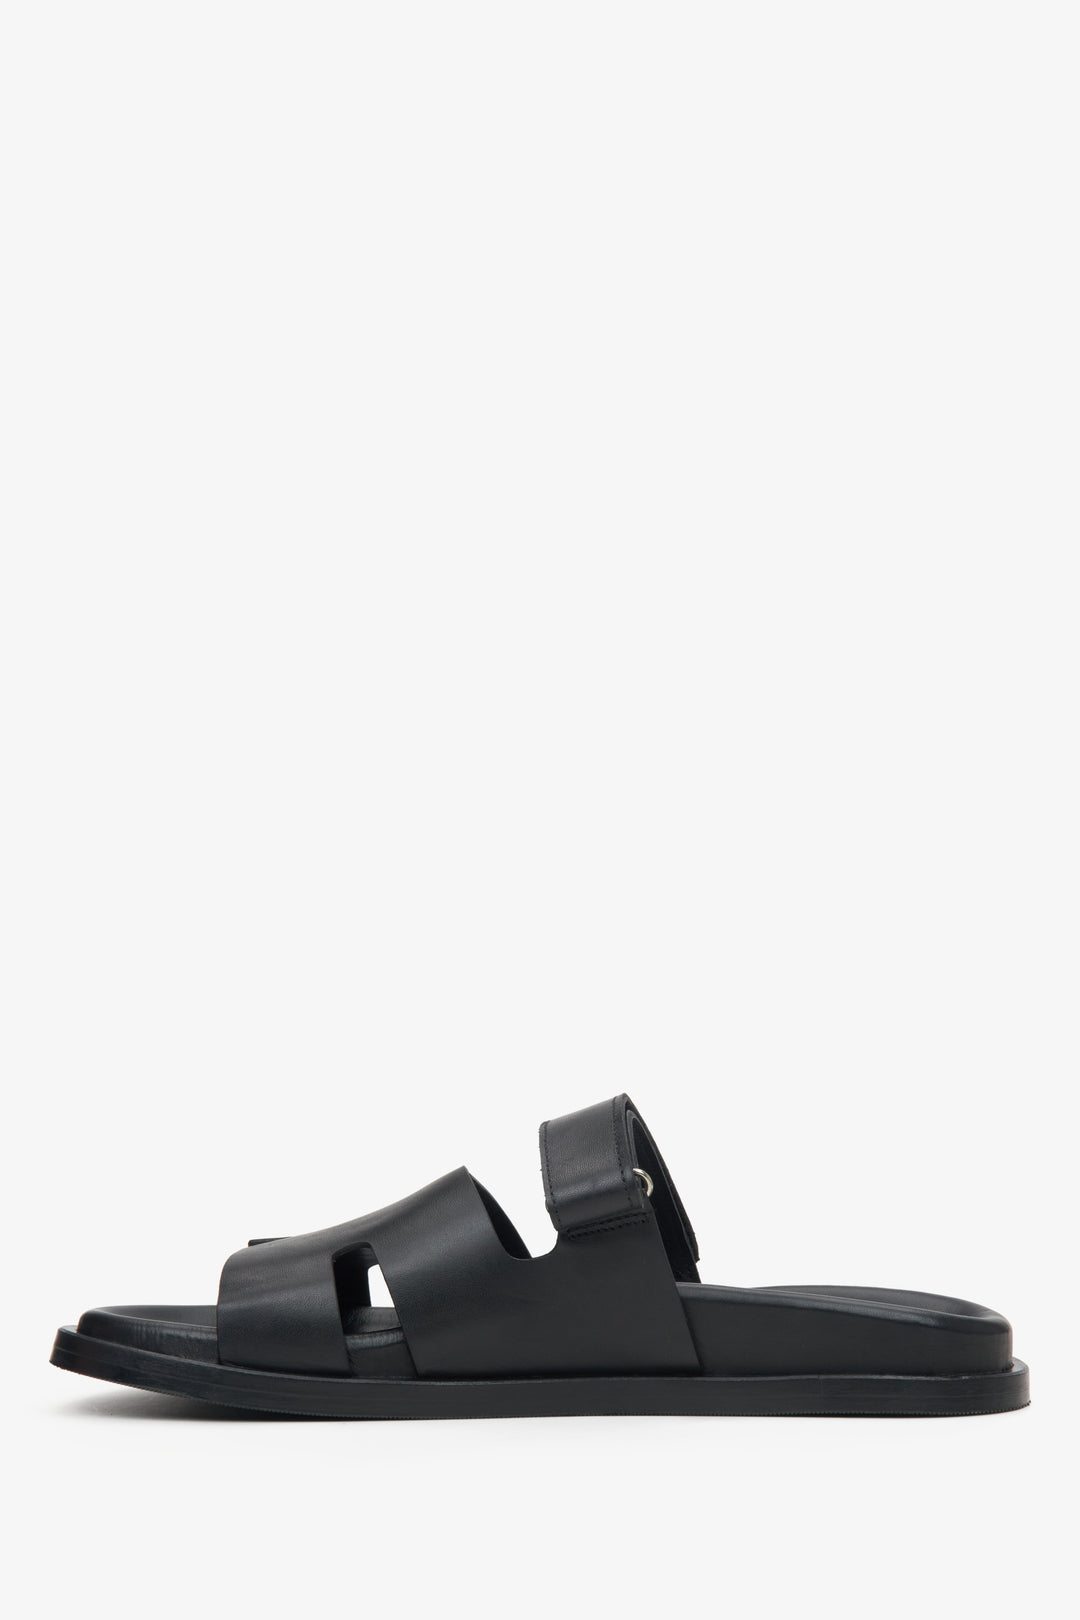 Women's black slide sandals Estro - shoe profile.